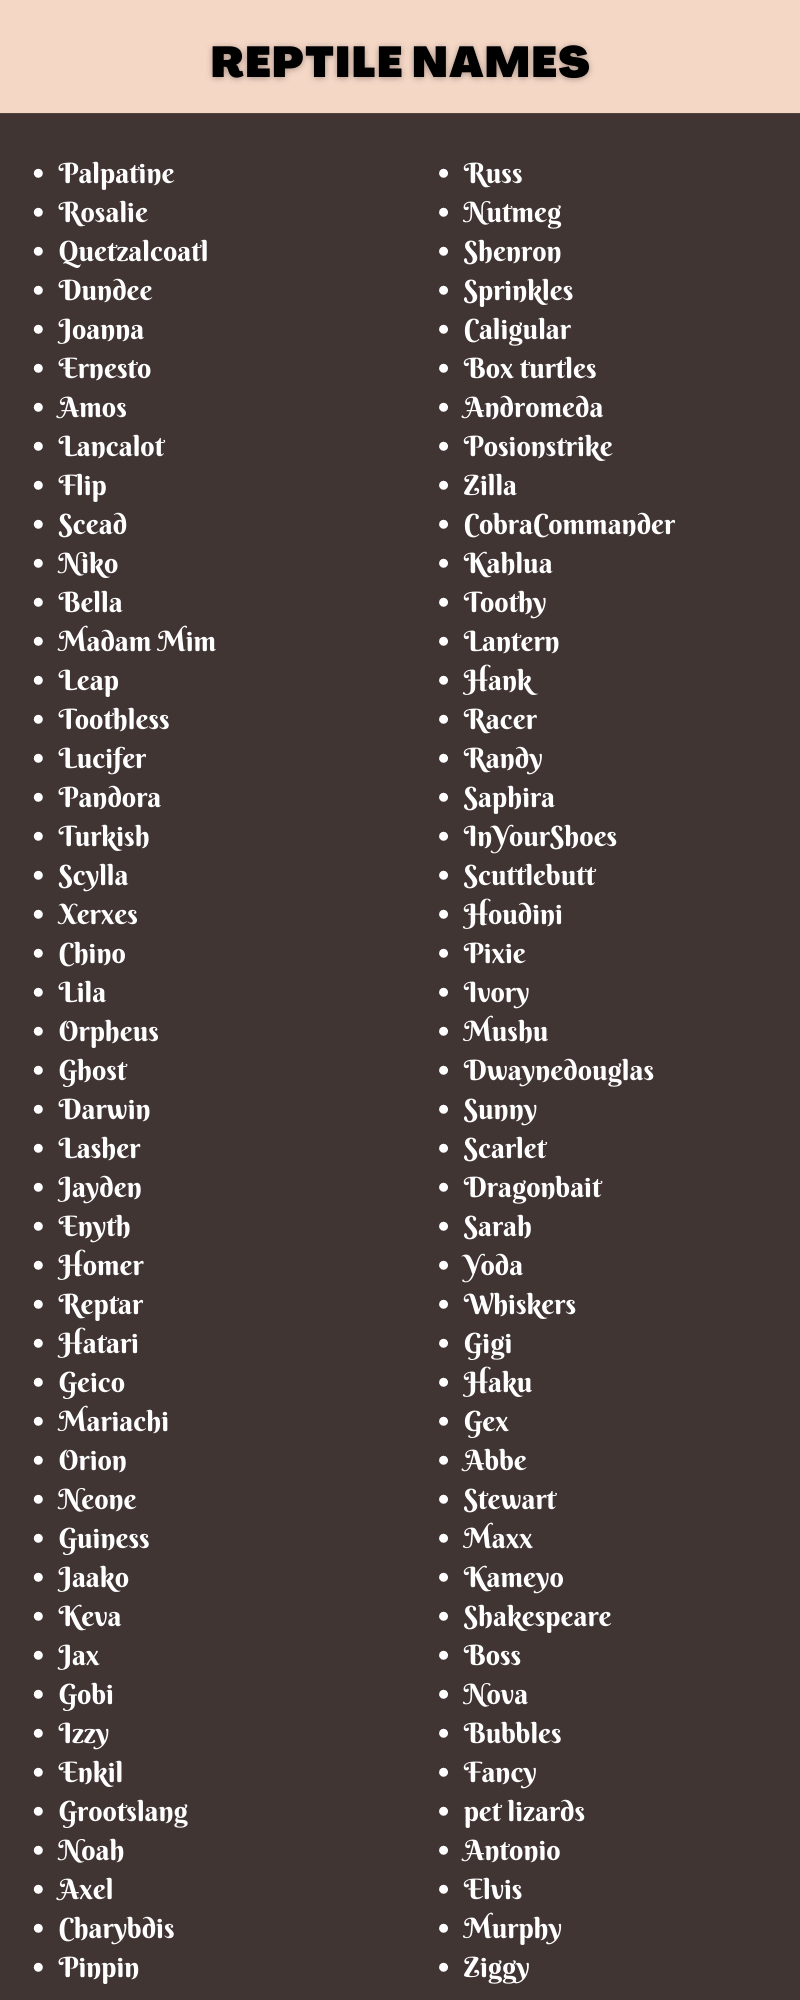 Reptile Names